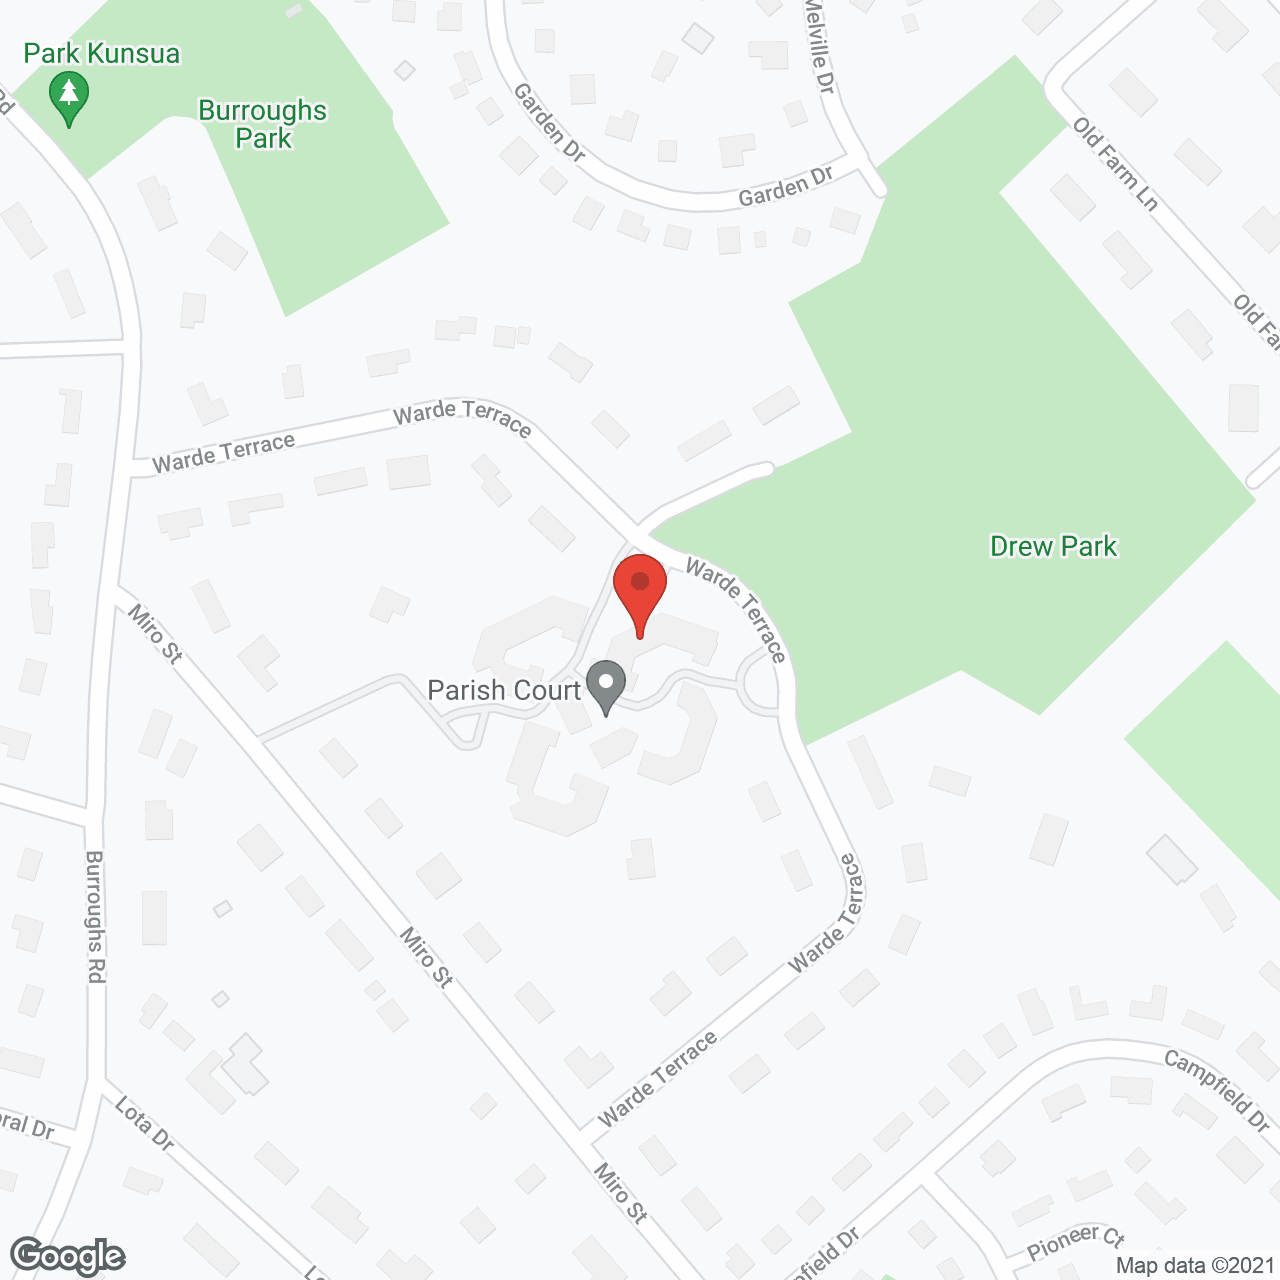 Parish Court in google map